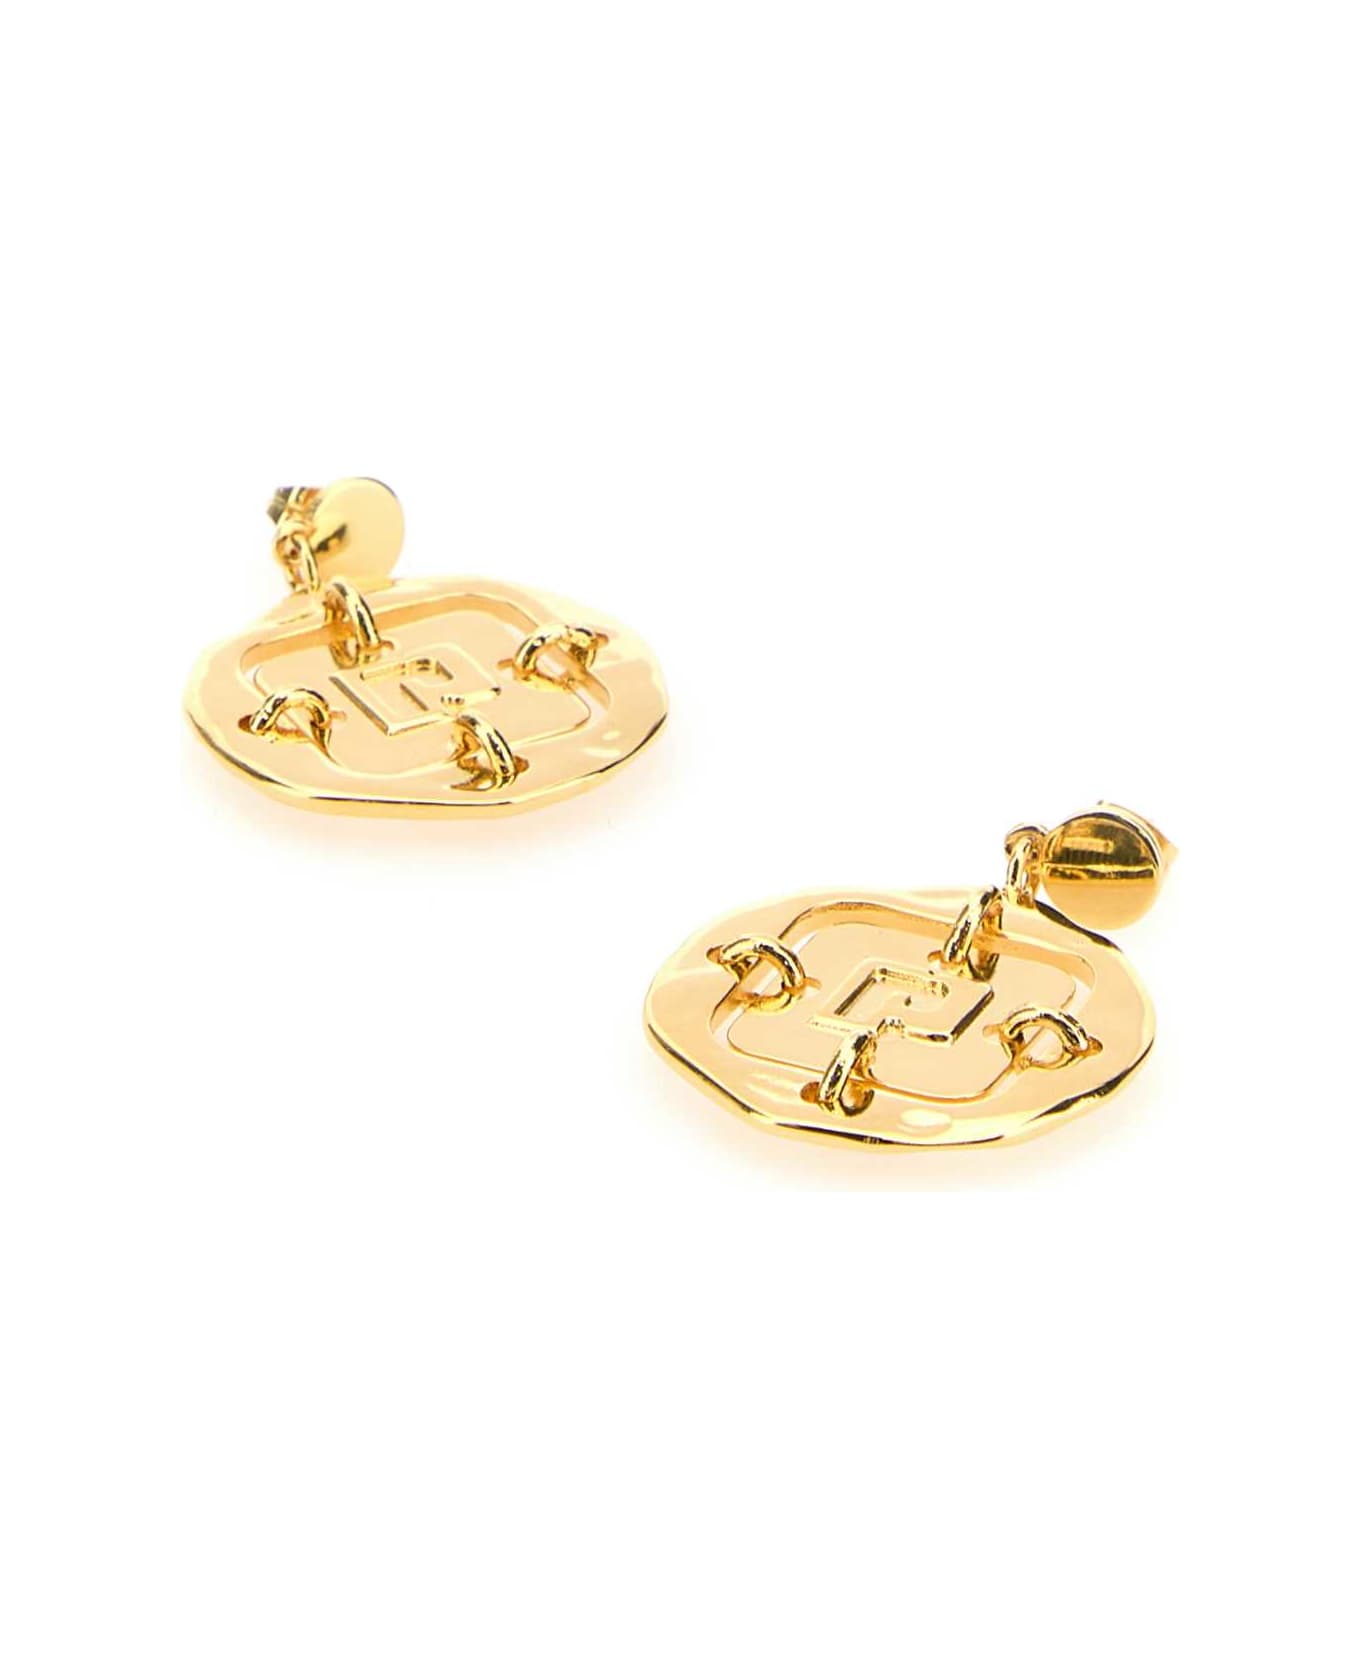 Paco Rabanne Gold Metal Earrings - GOLD イヤリング